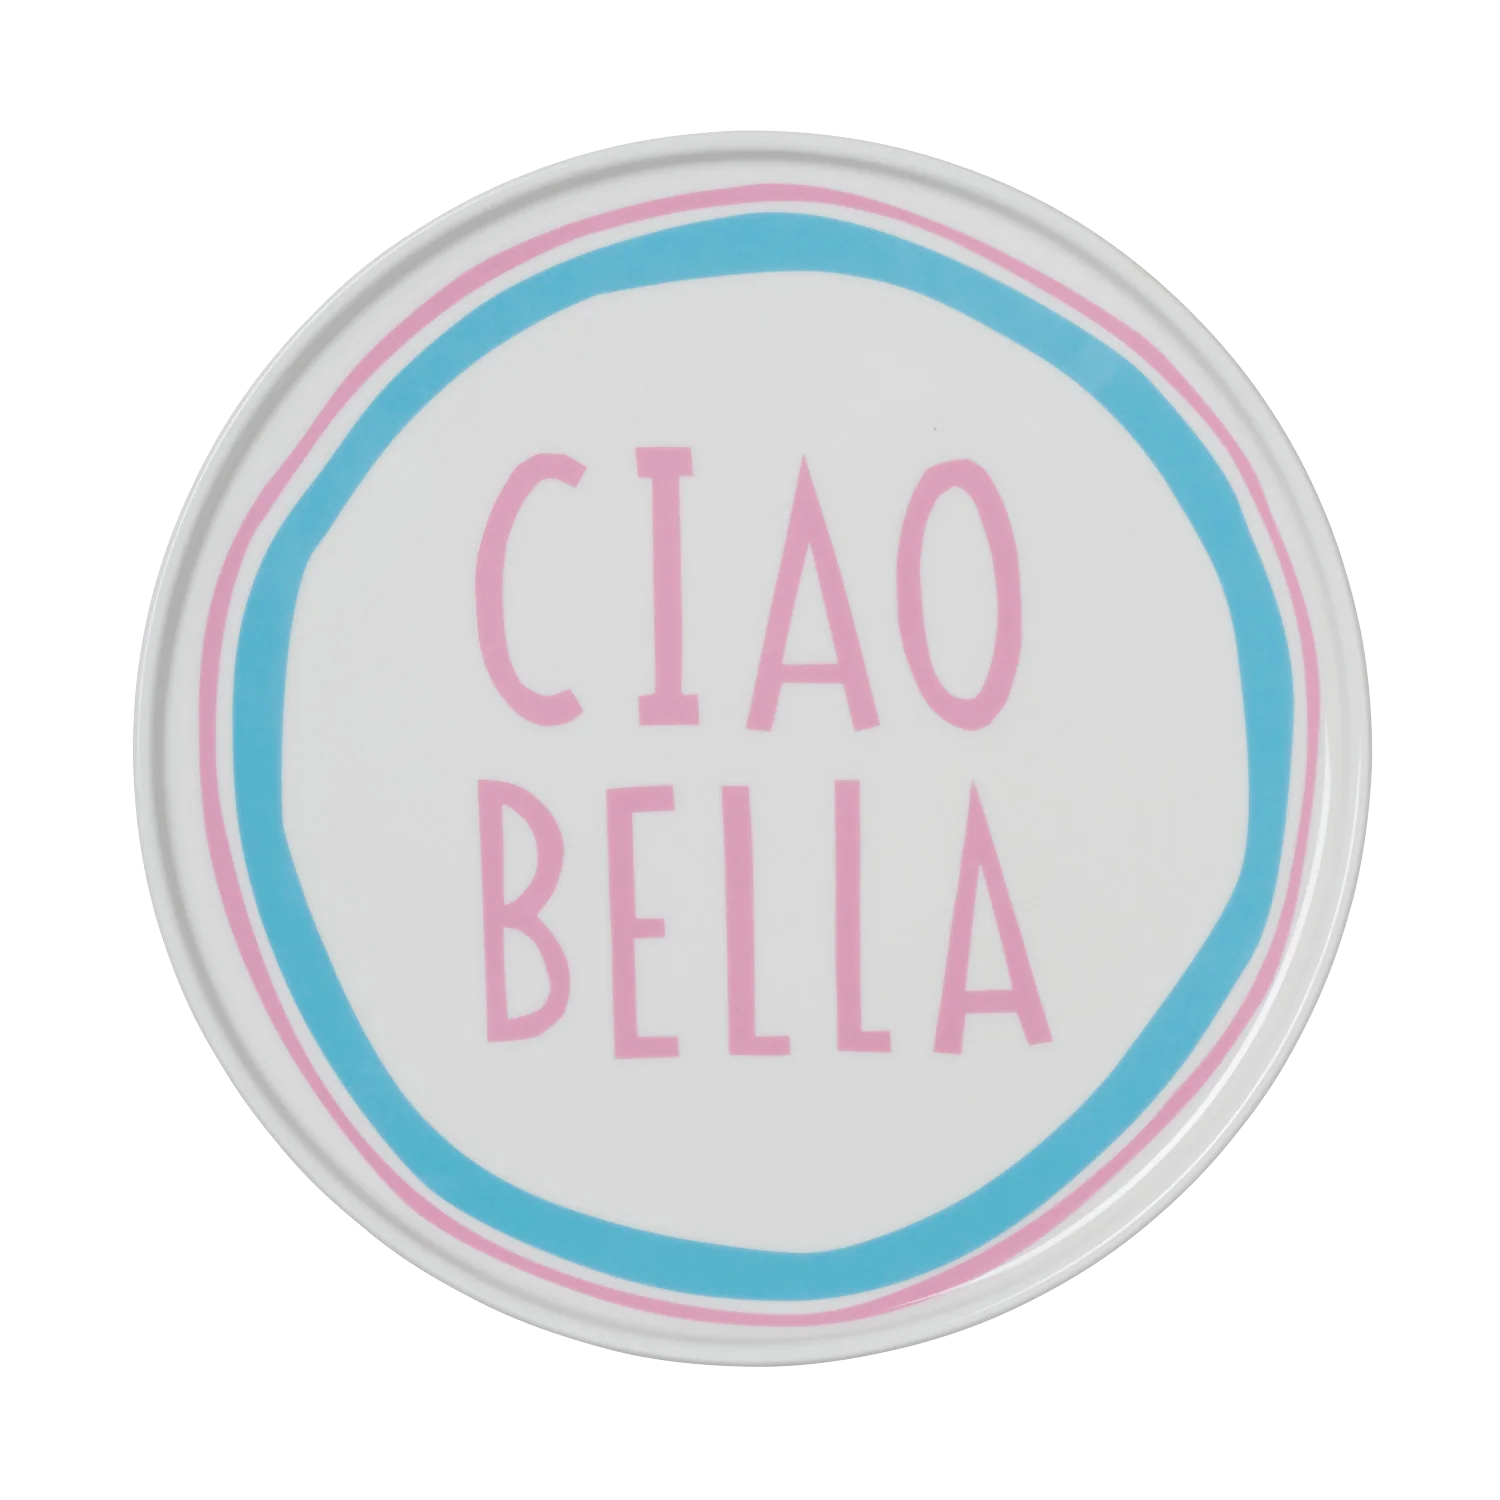 Blue Ciao Bella Plate